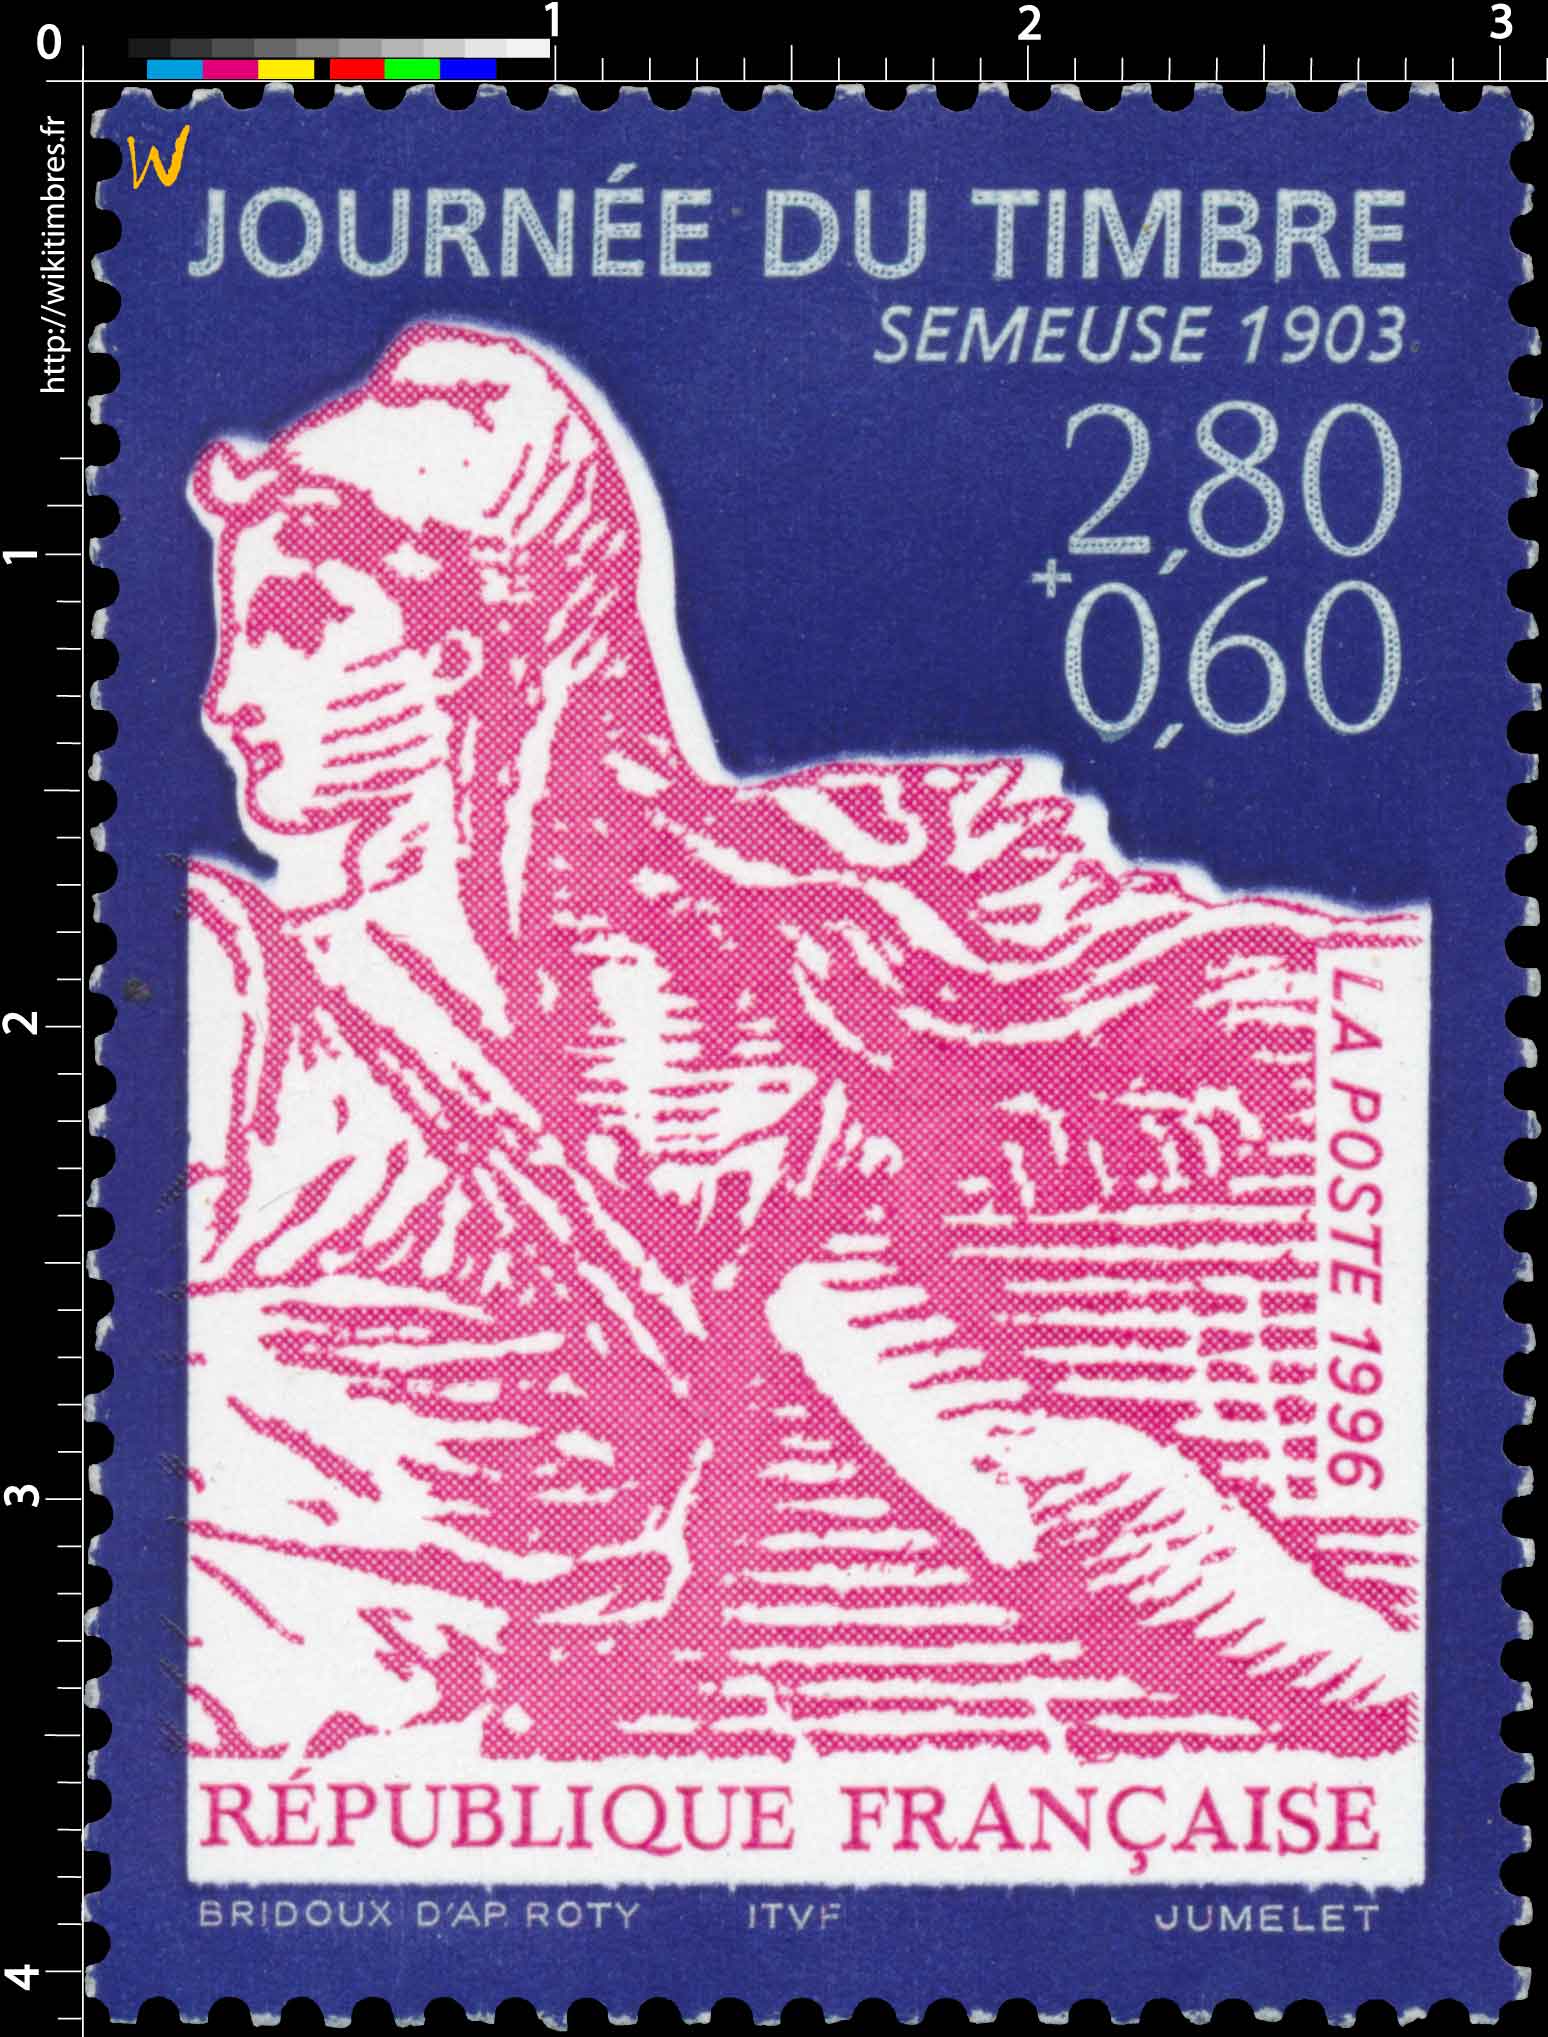 1996 JOURNÉE DU TIMBRE SEMEUSE 1903